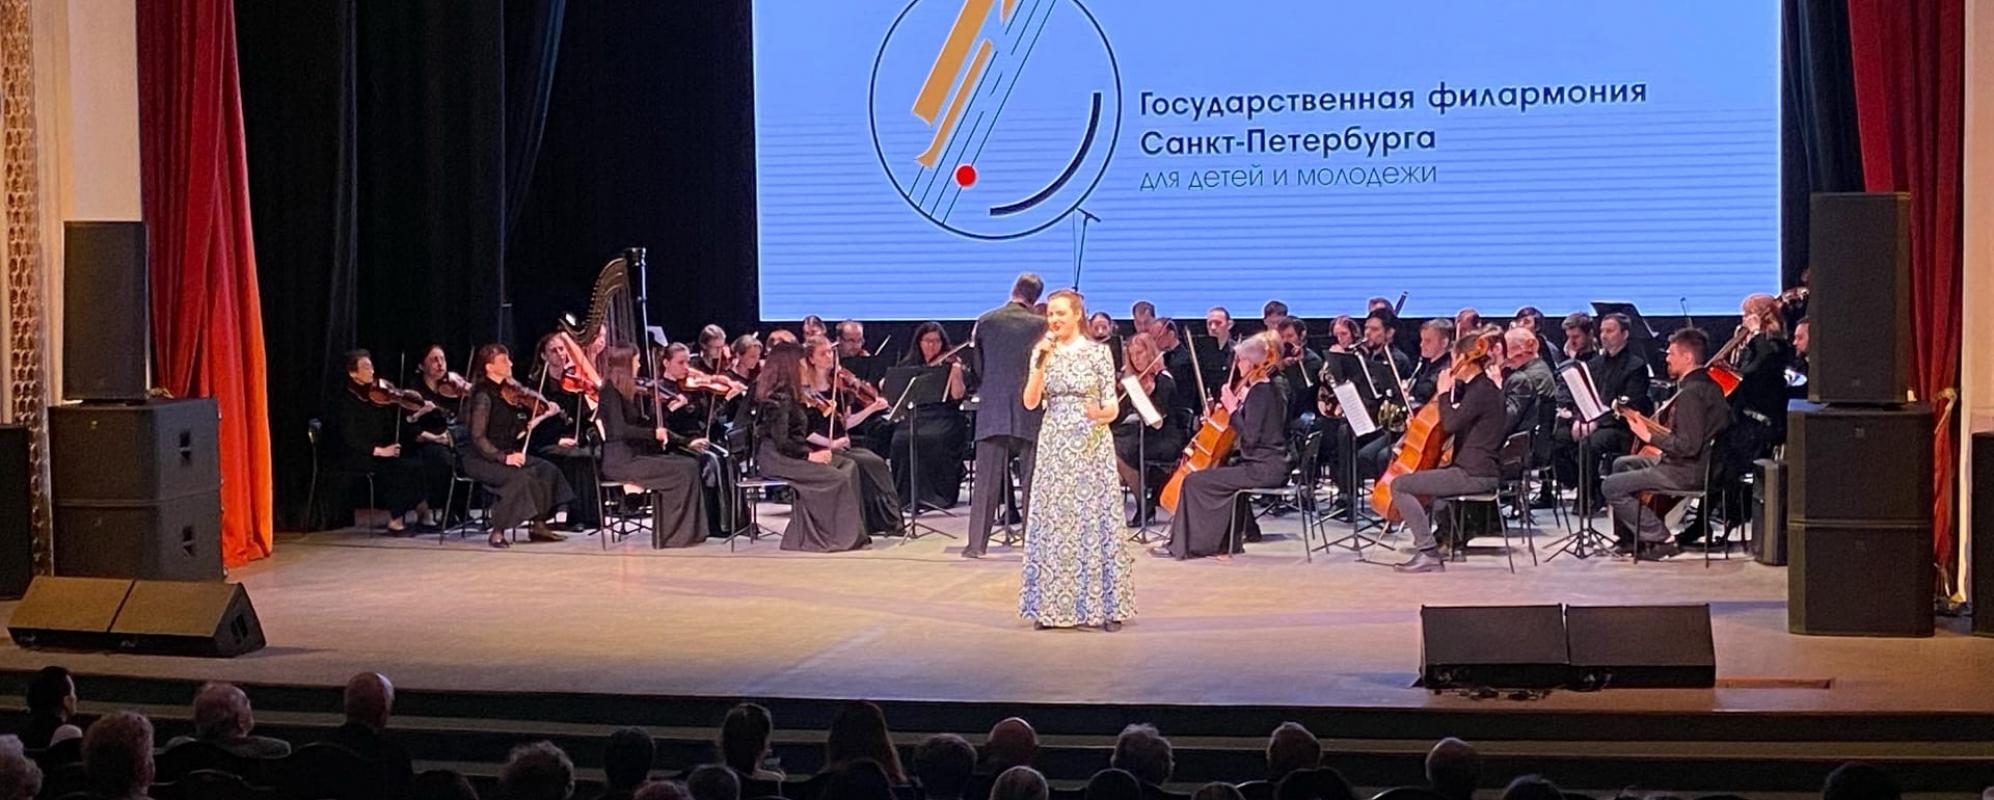 Фотографии концертного зала Большой зал Волховского ГДК